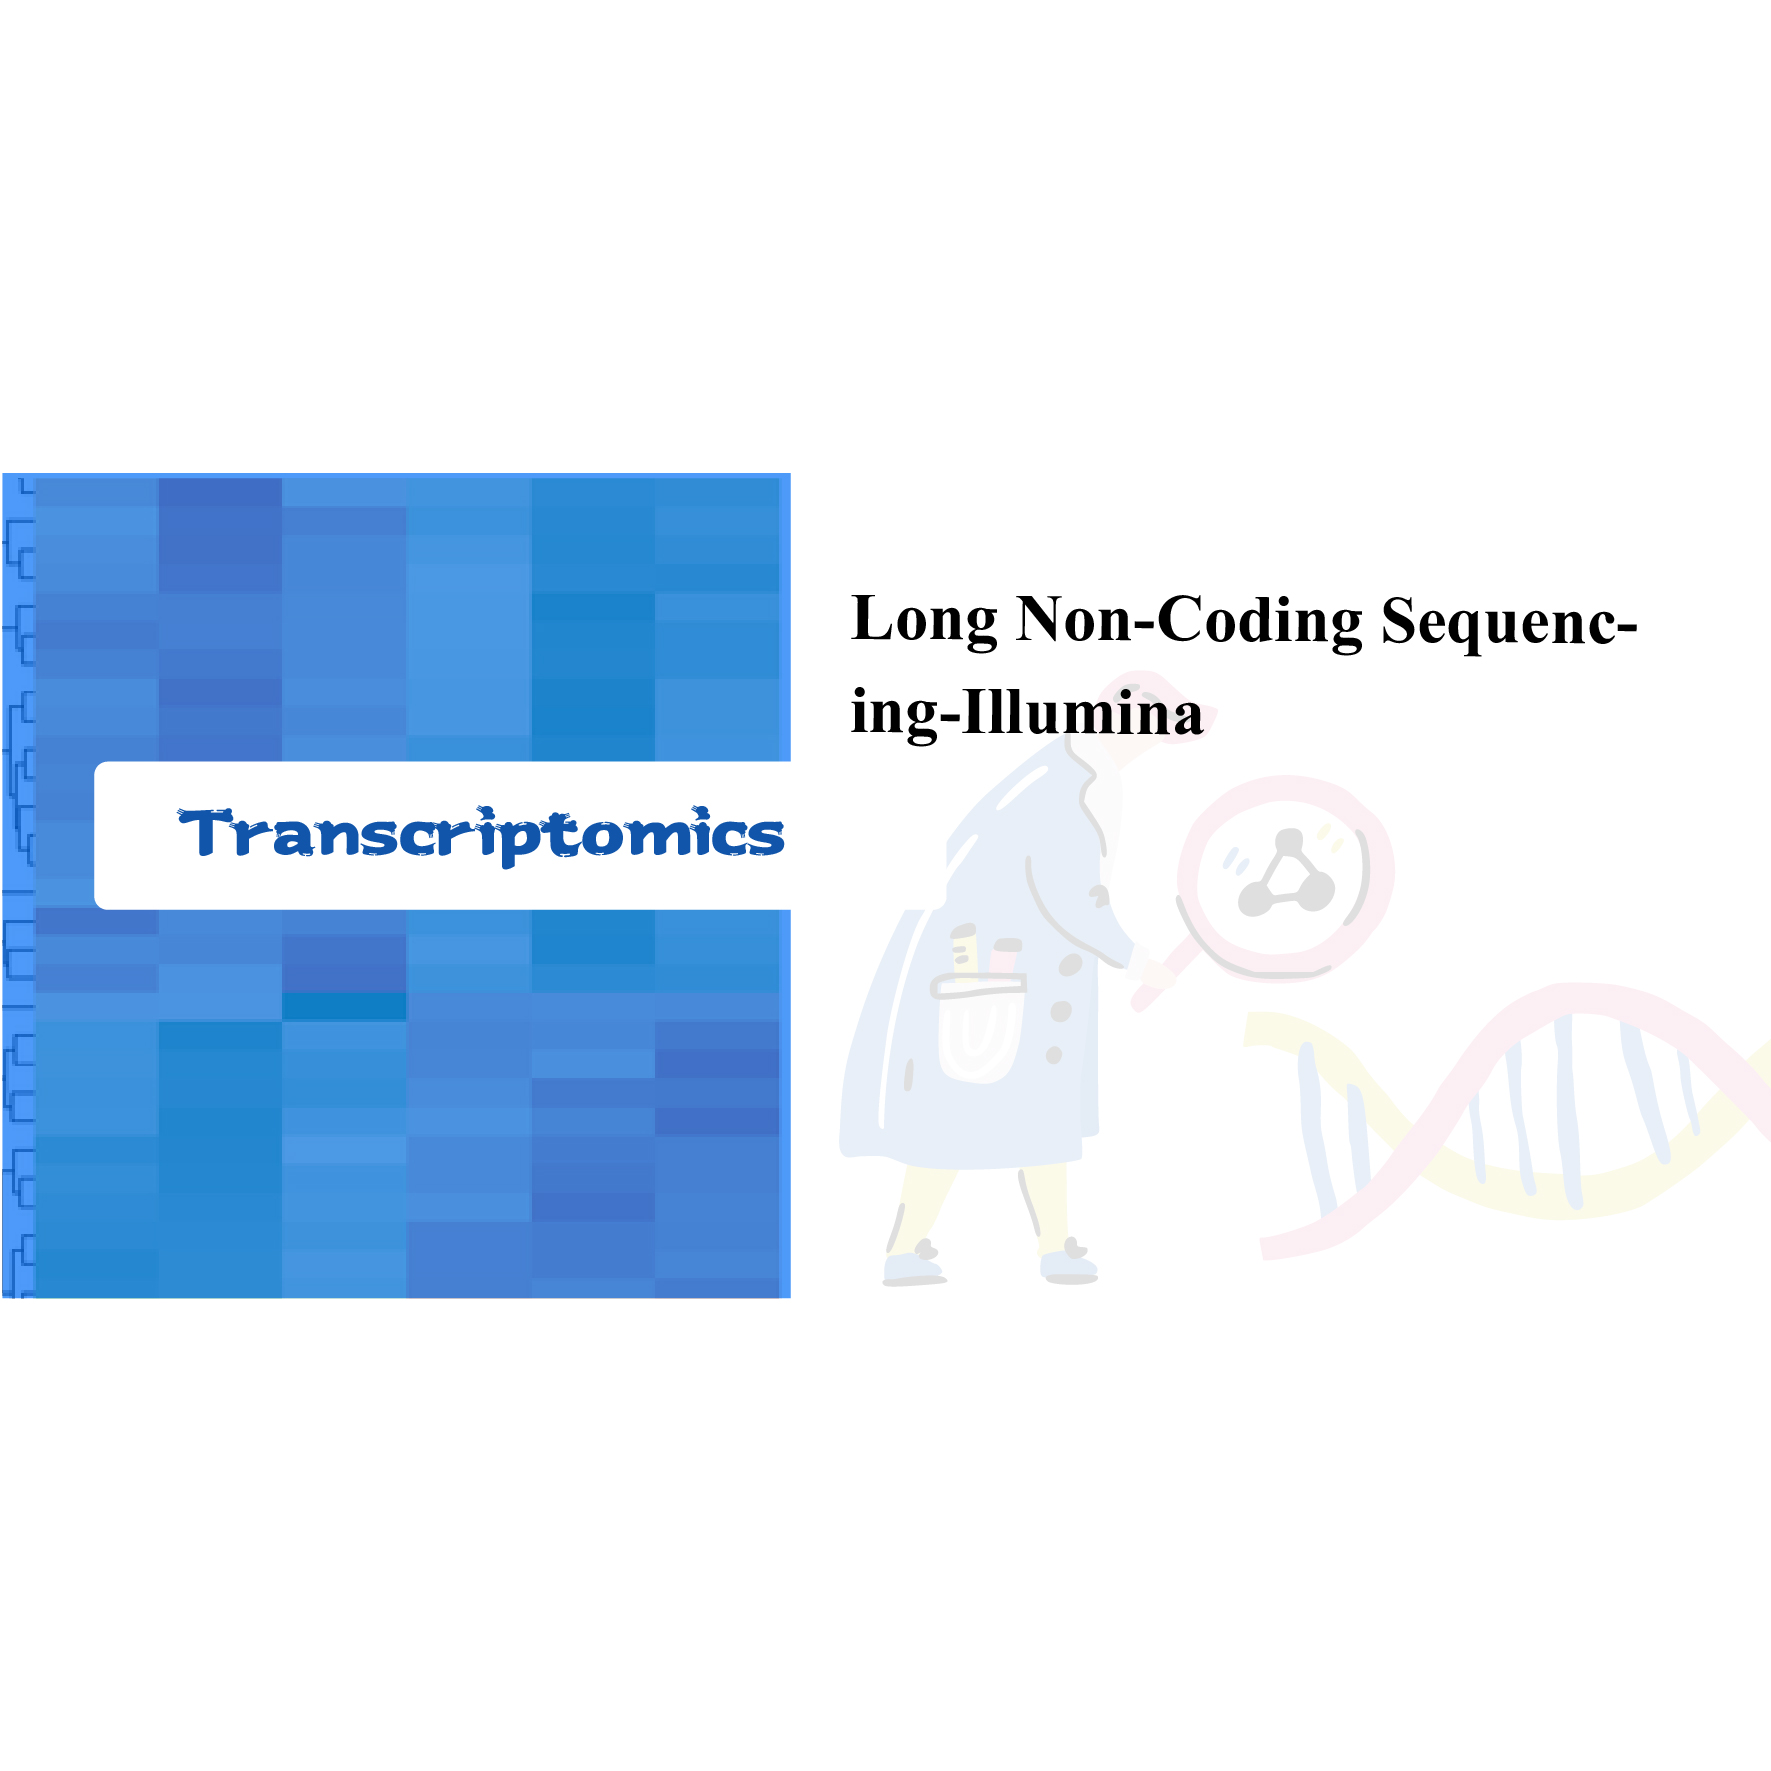 Long non-coding sequencing-Illumina